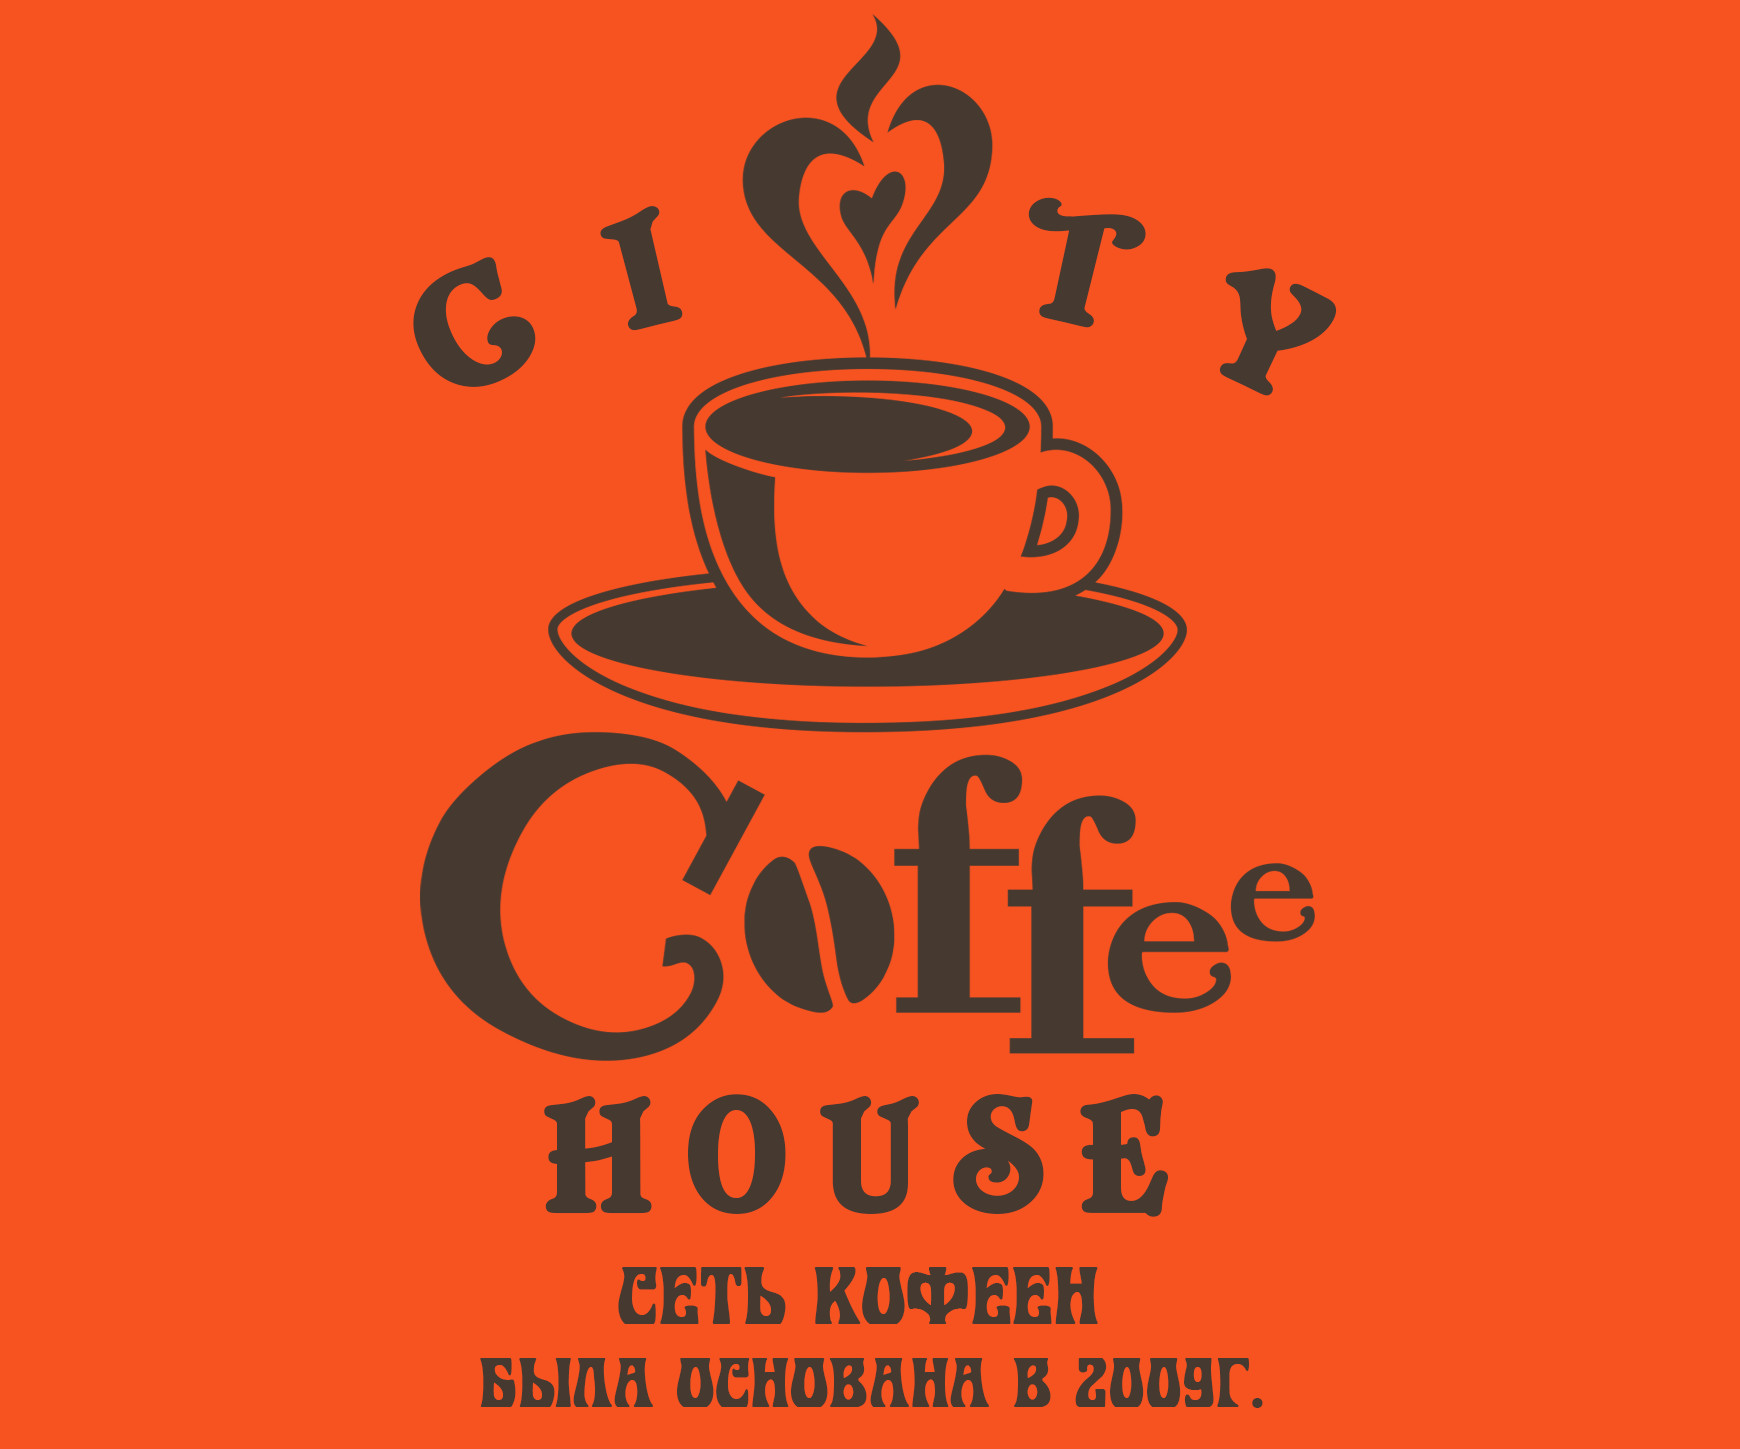 Кофе есть кофейня. Современный логотип кофейни. Логотип кофе. Логотипы кофеен.